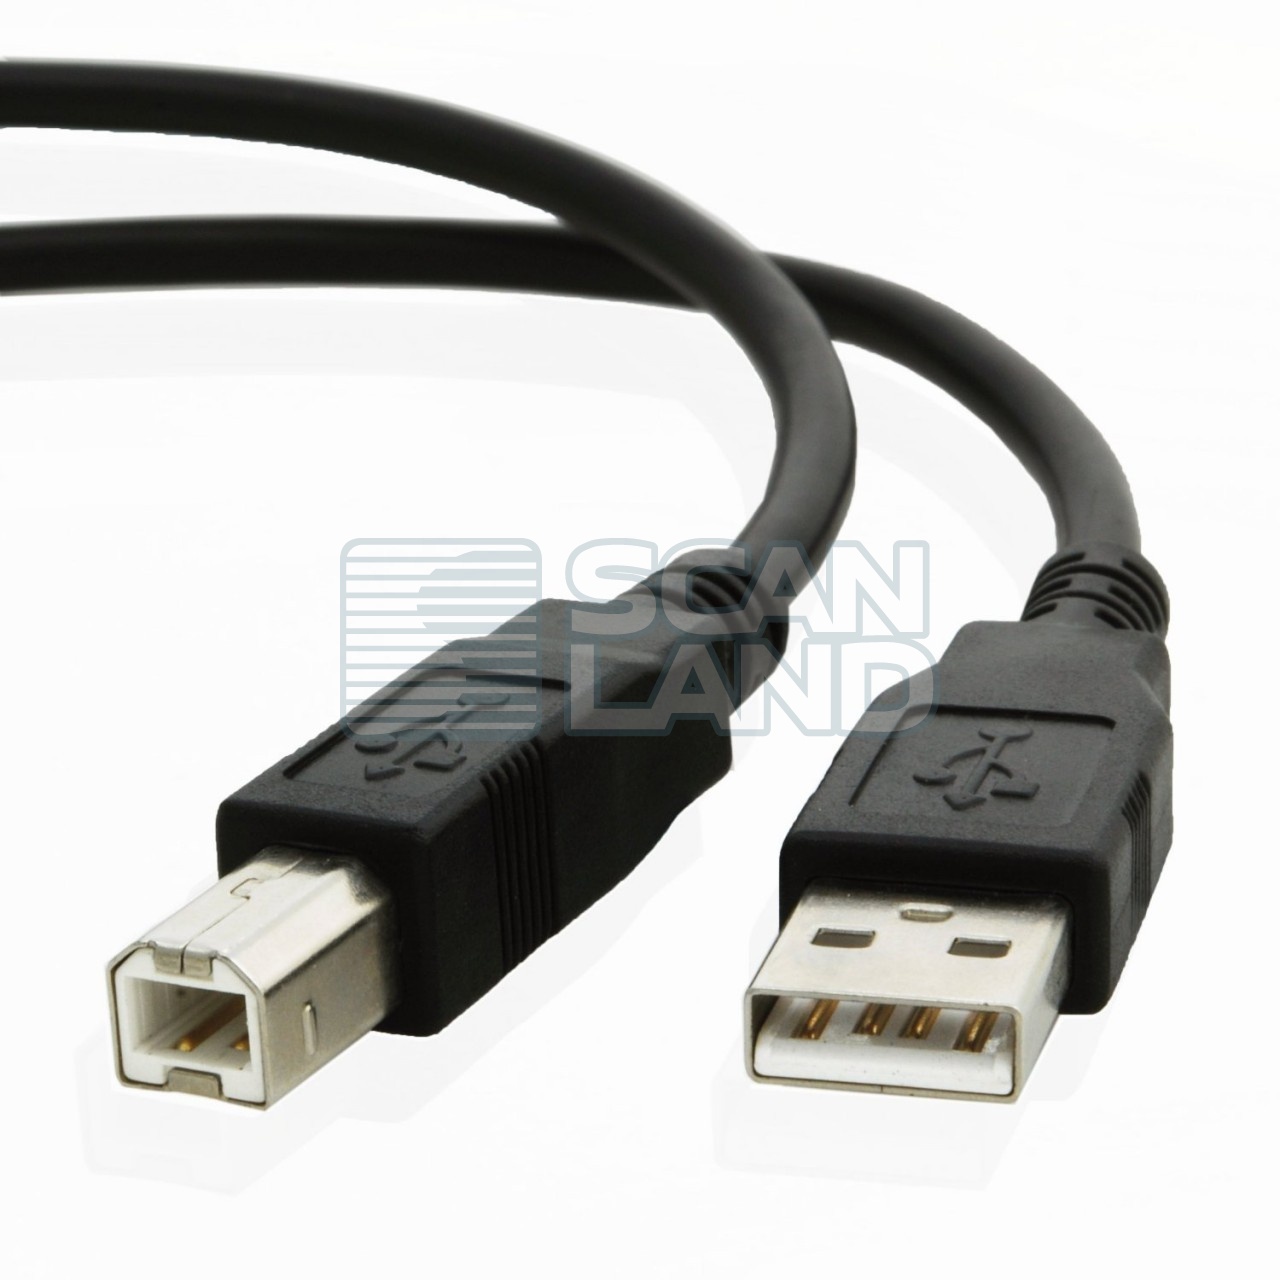 Nexiq USB Link -     